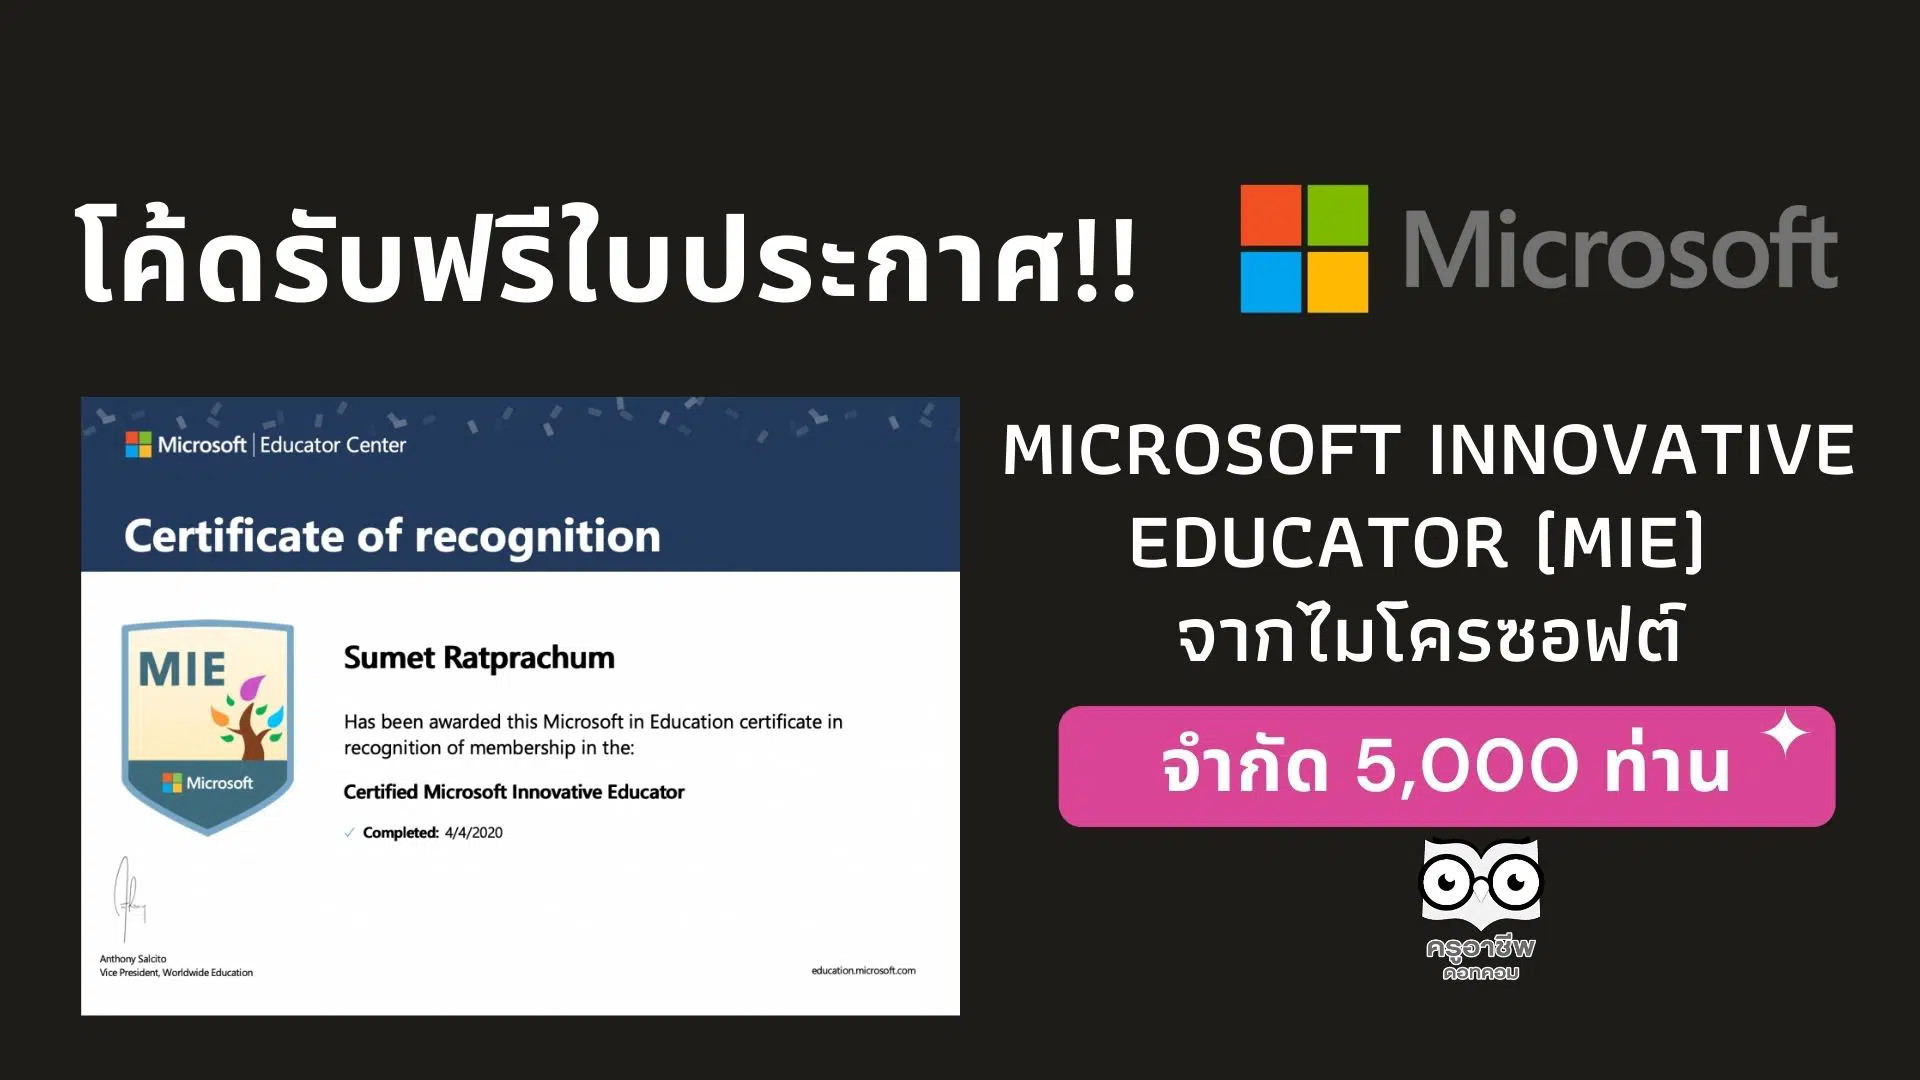 โค้ดรับฟรีใบประกาศ Microsoft Innovative Educator (MIE) จากไมโครซอฟต์ จำกัด 5,000 ท่าน